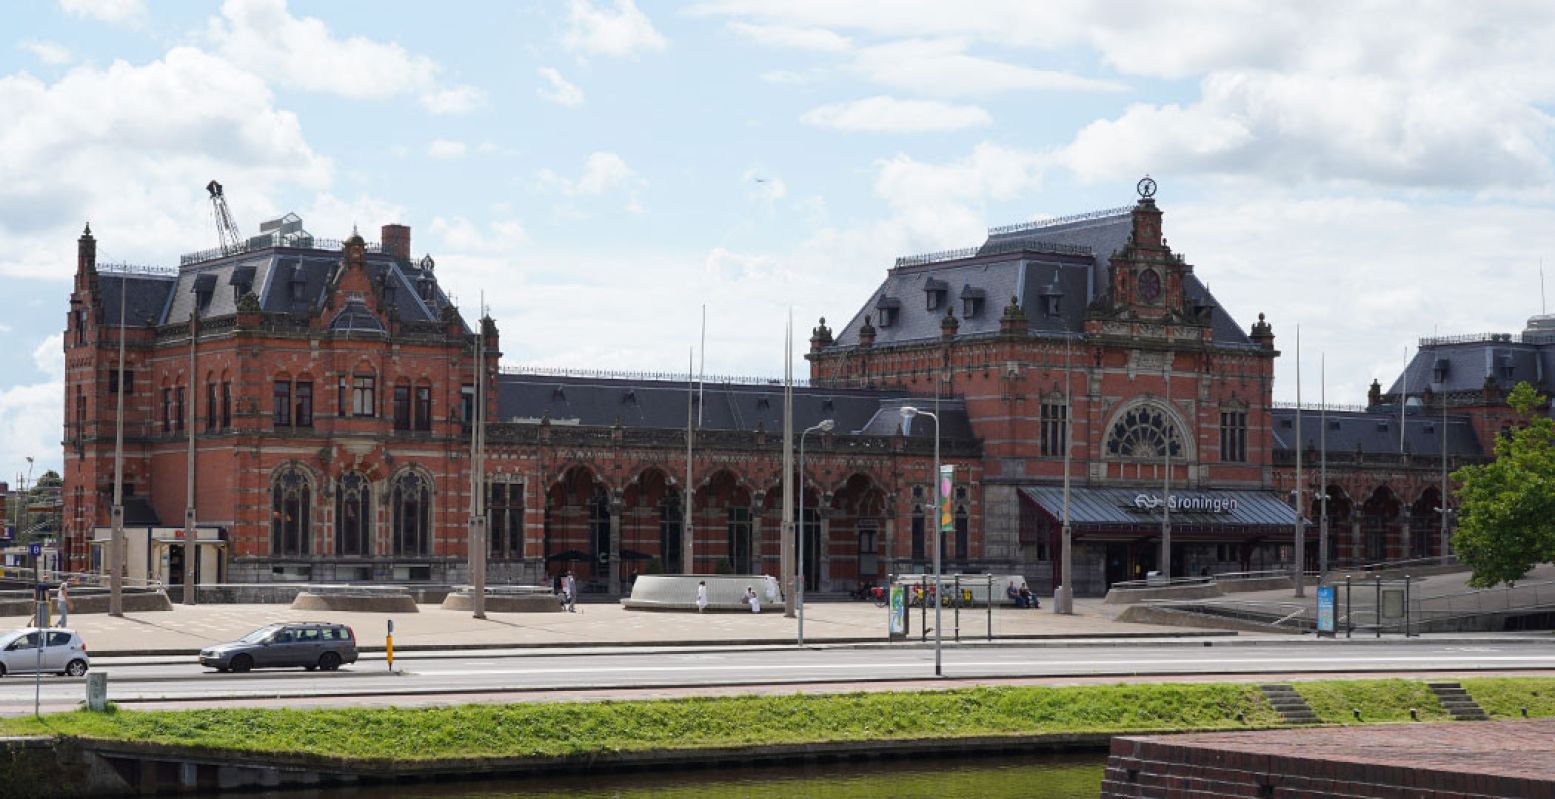 Treinreizen wordt een dagje uit: bewonder indrukwekkende stations in Nederland, zoals Station Groningen. Foto: André Löwenthal